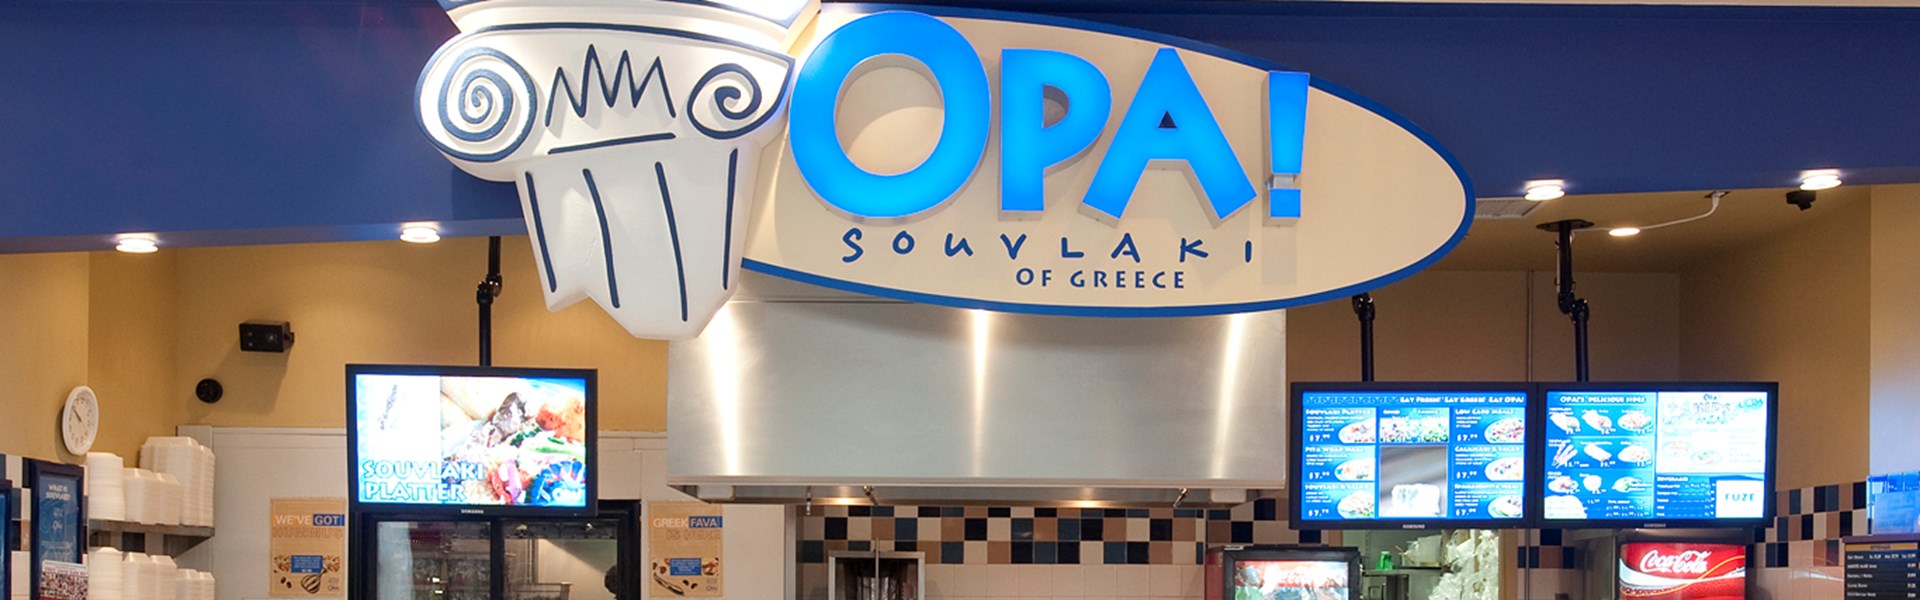 OPA! of Greece - Phase III